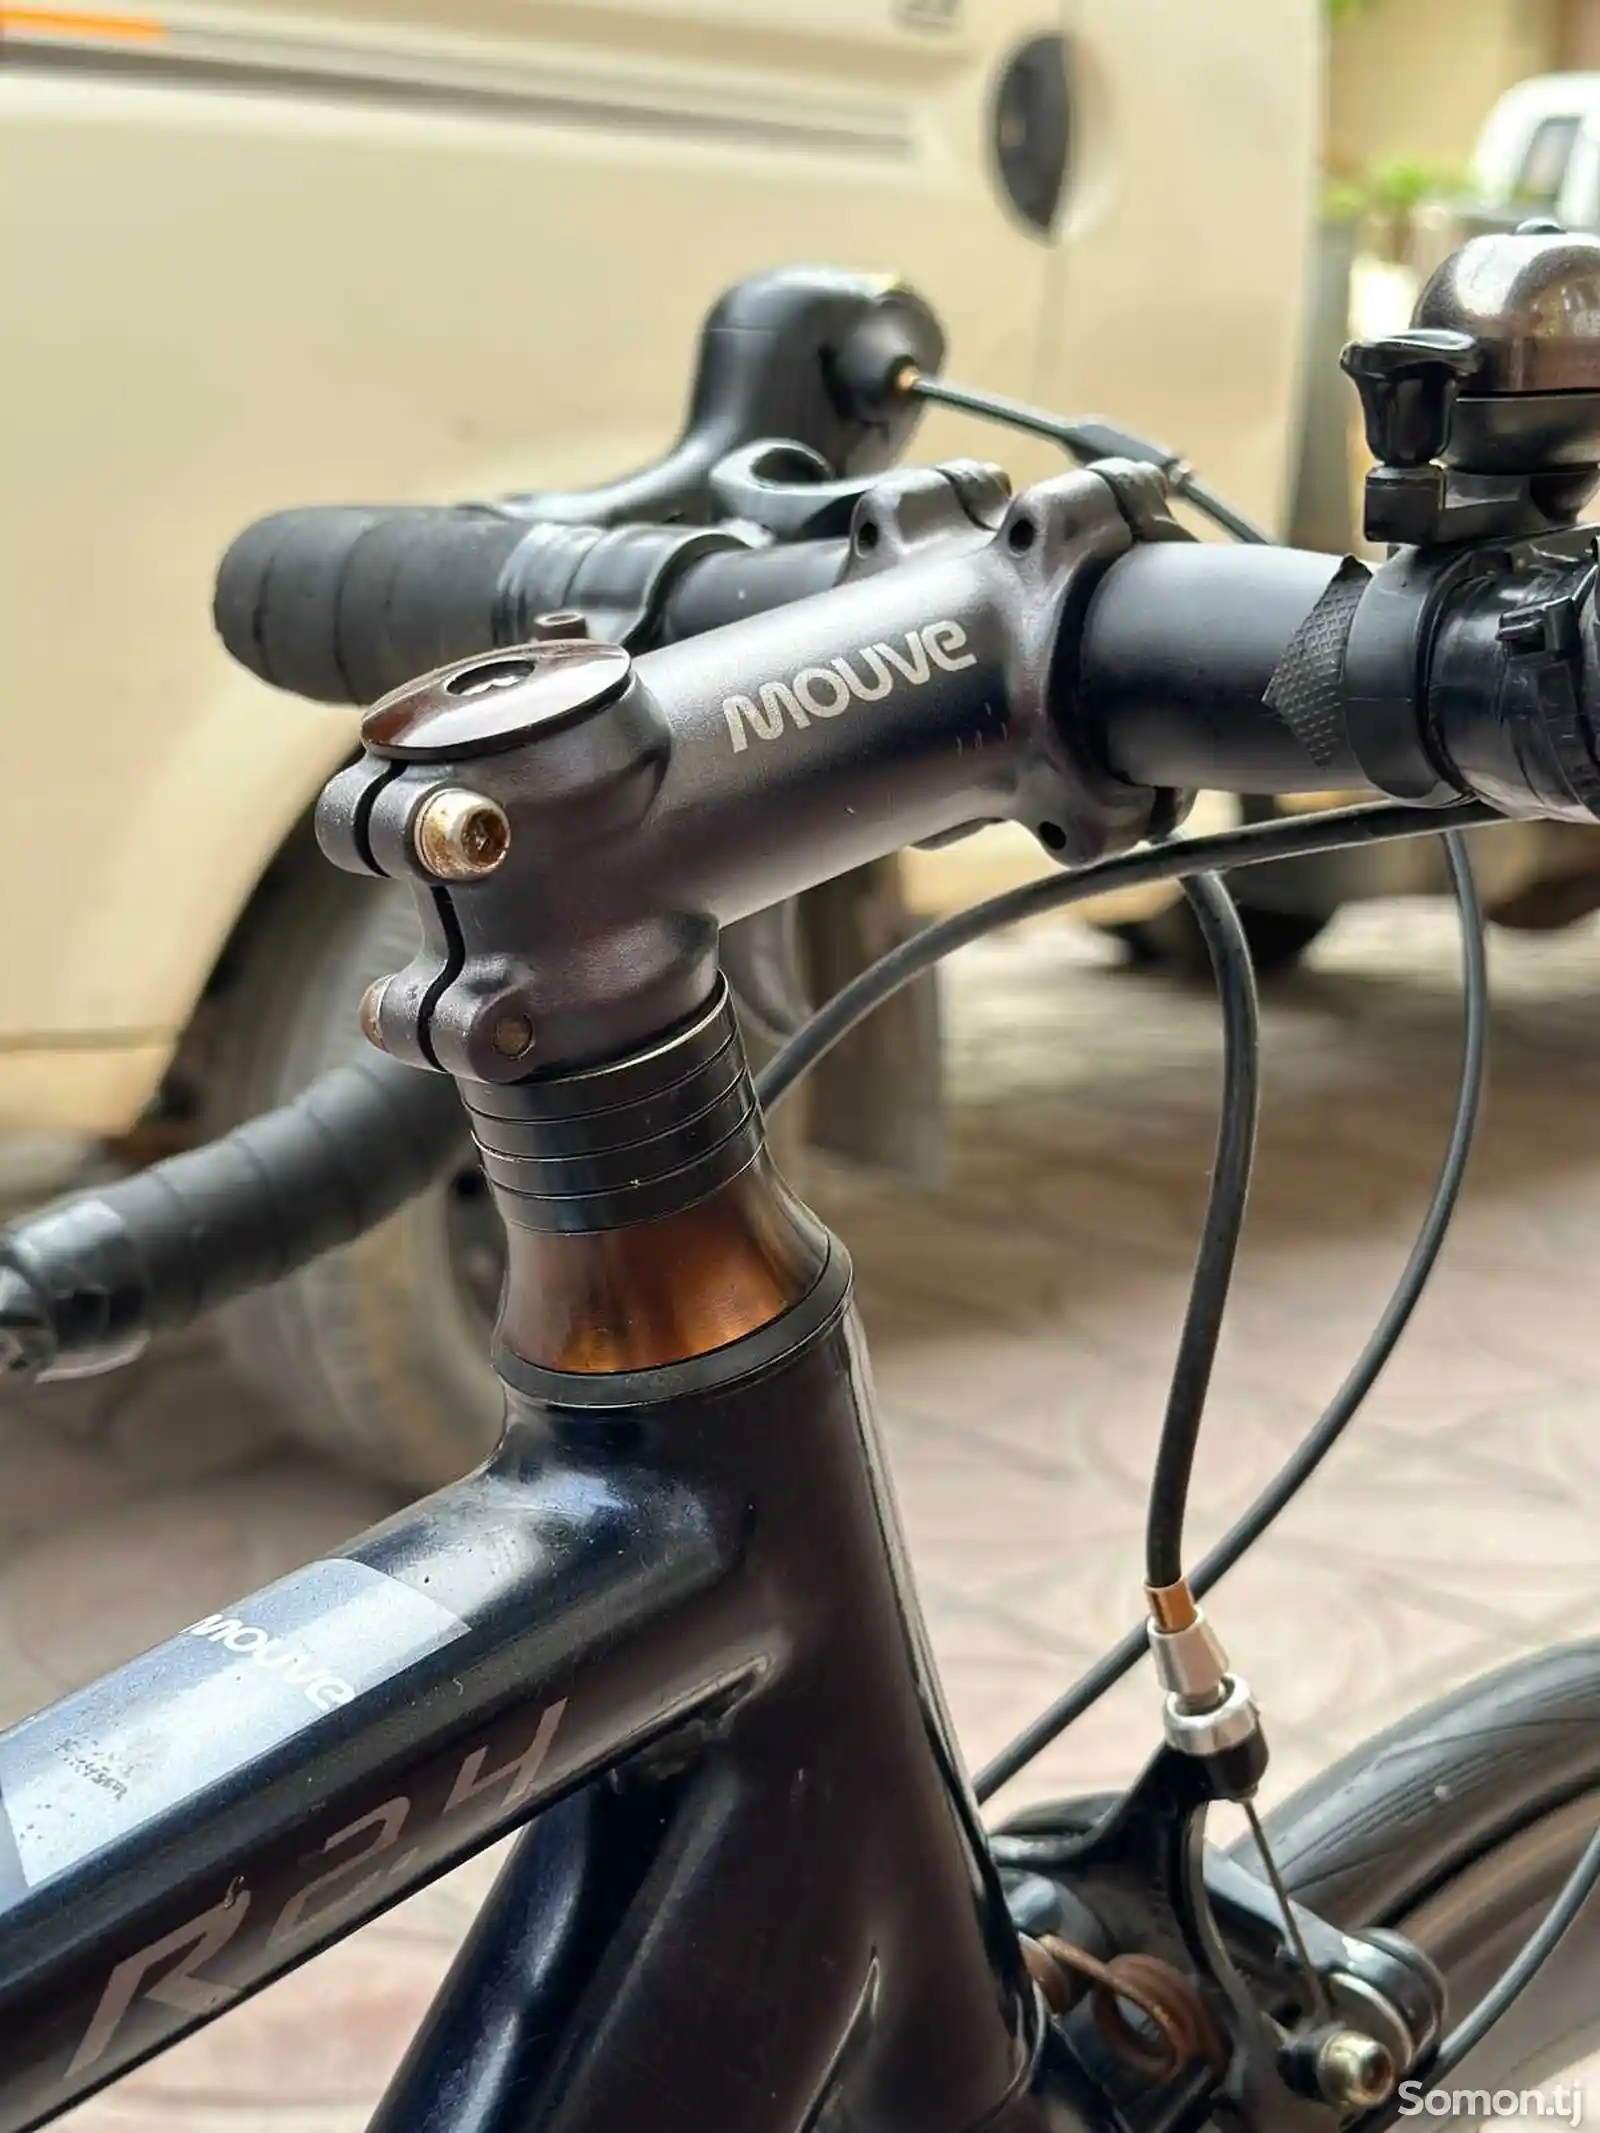 Шоссейный карбоновый велосипед Mouve-10